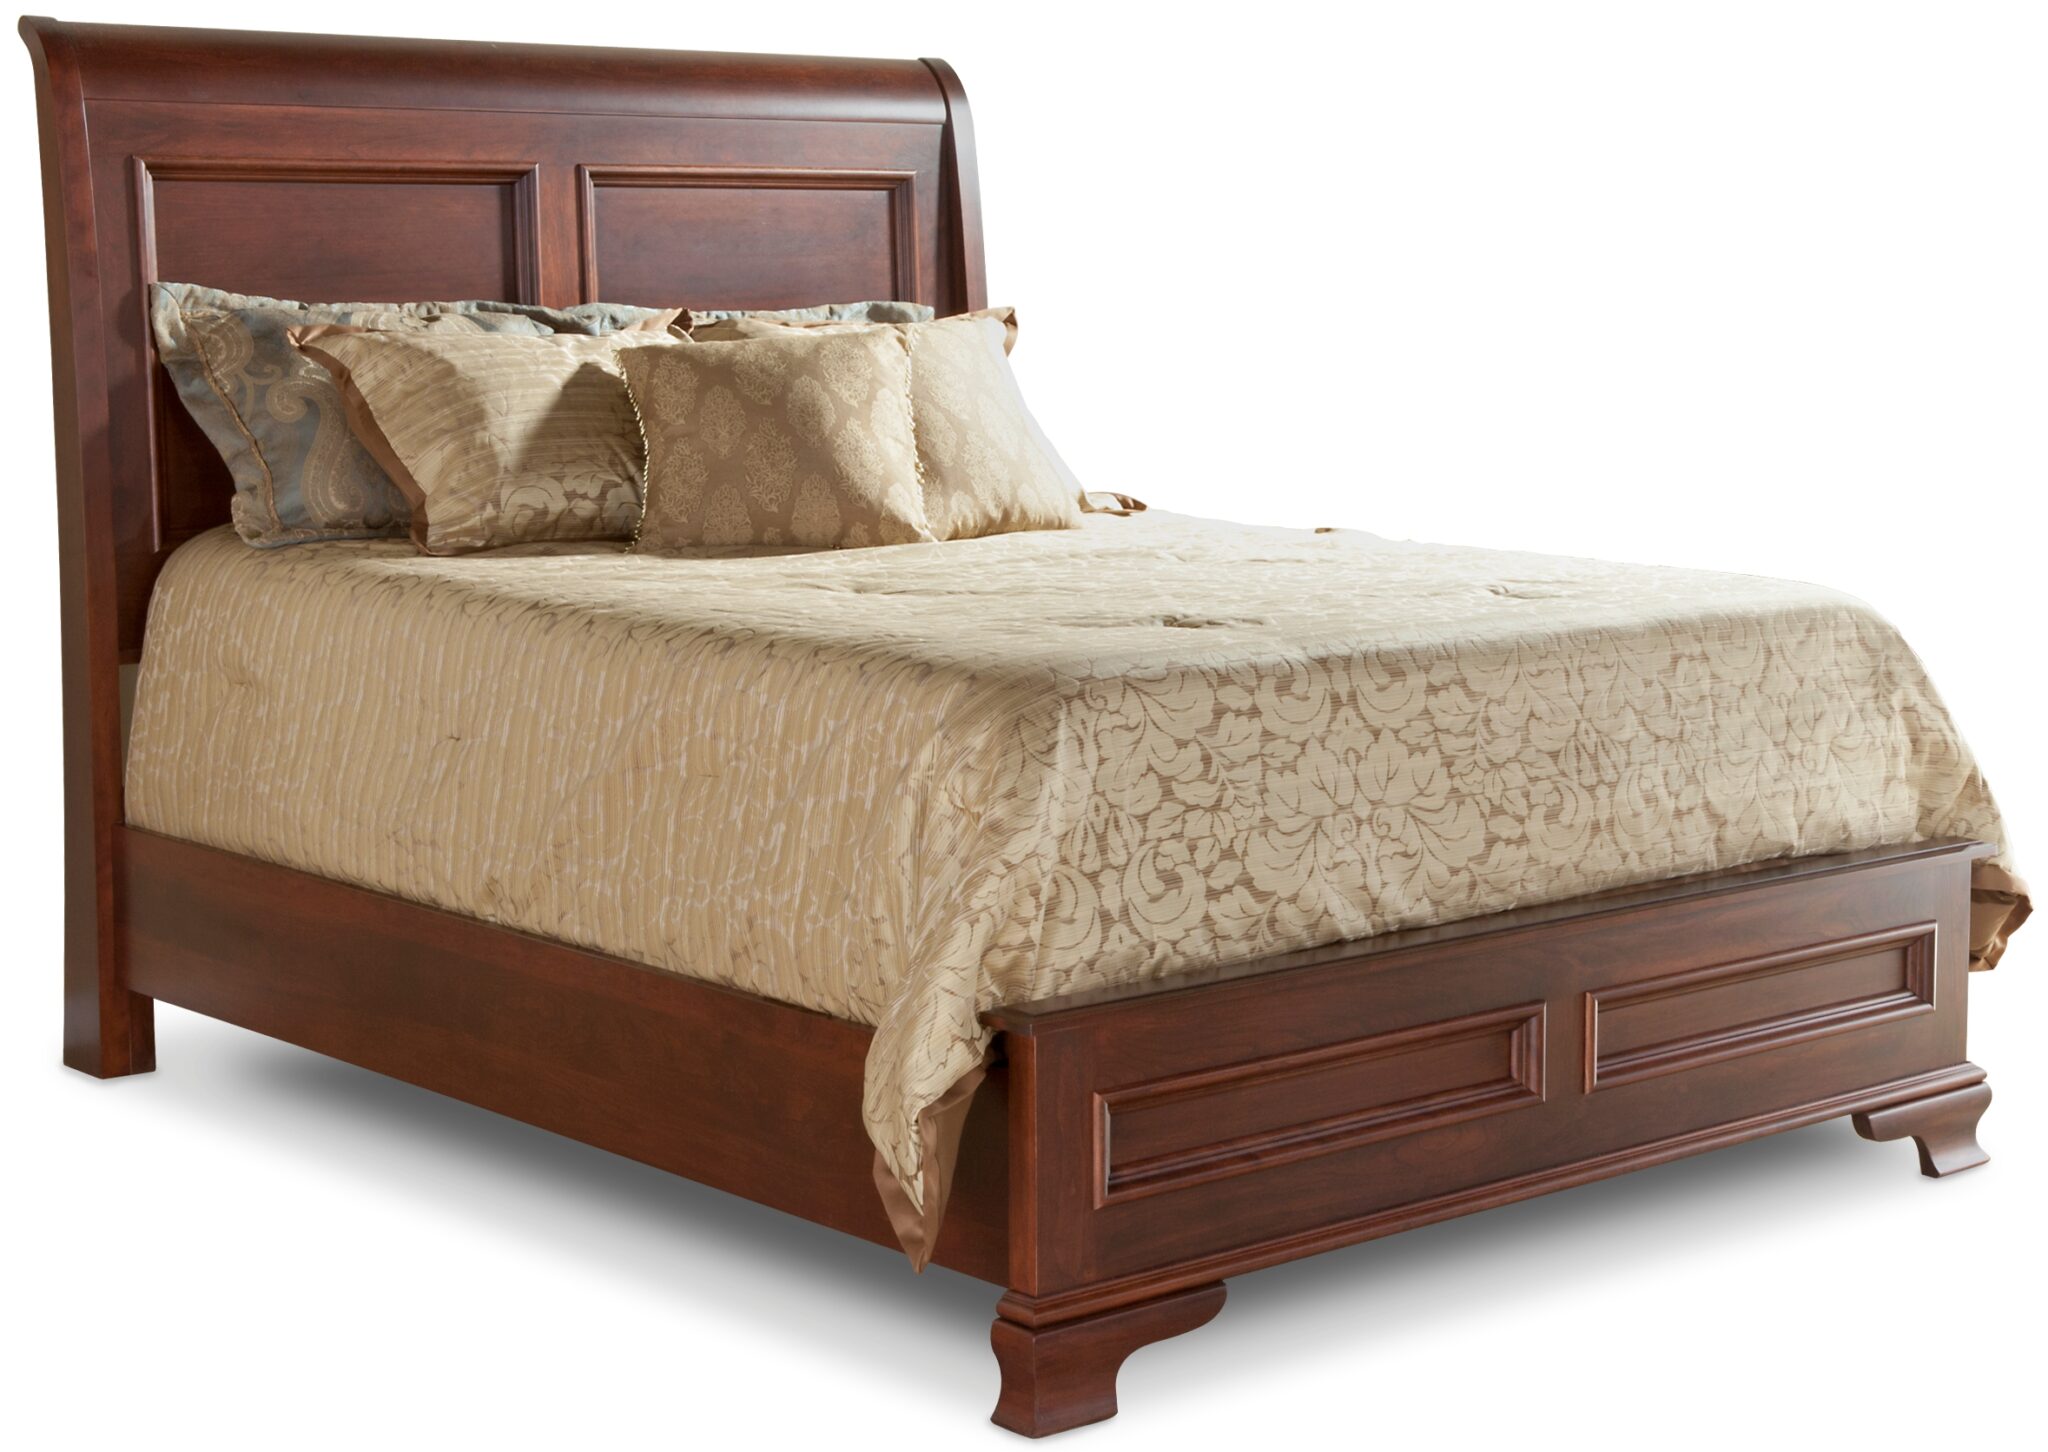 daniels furniture goldsboro nc mattress